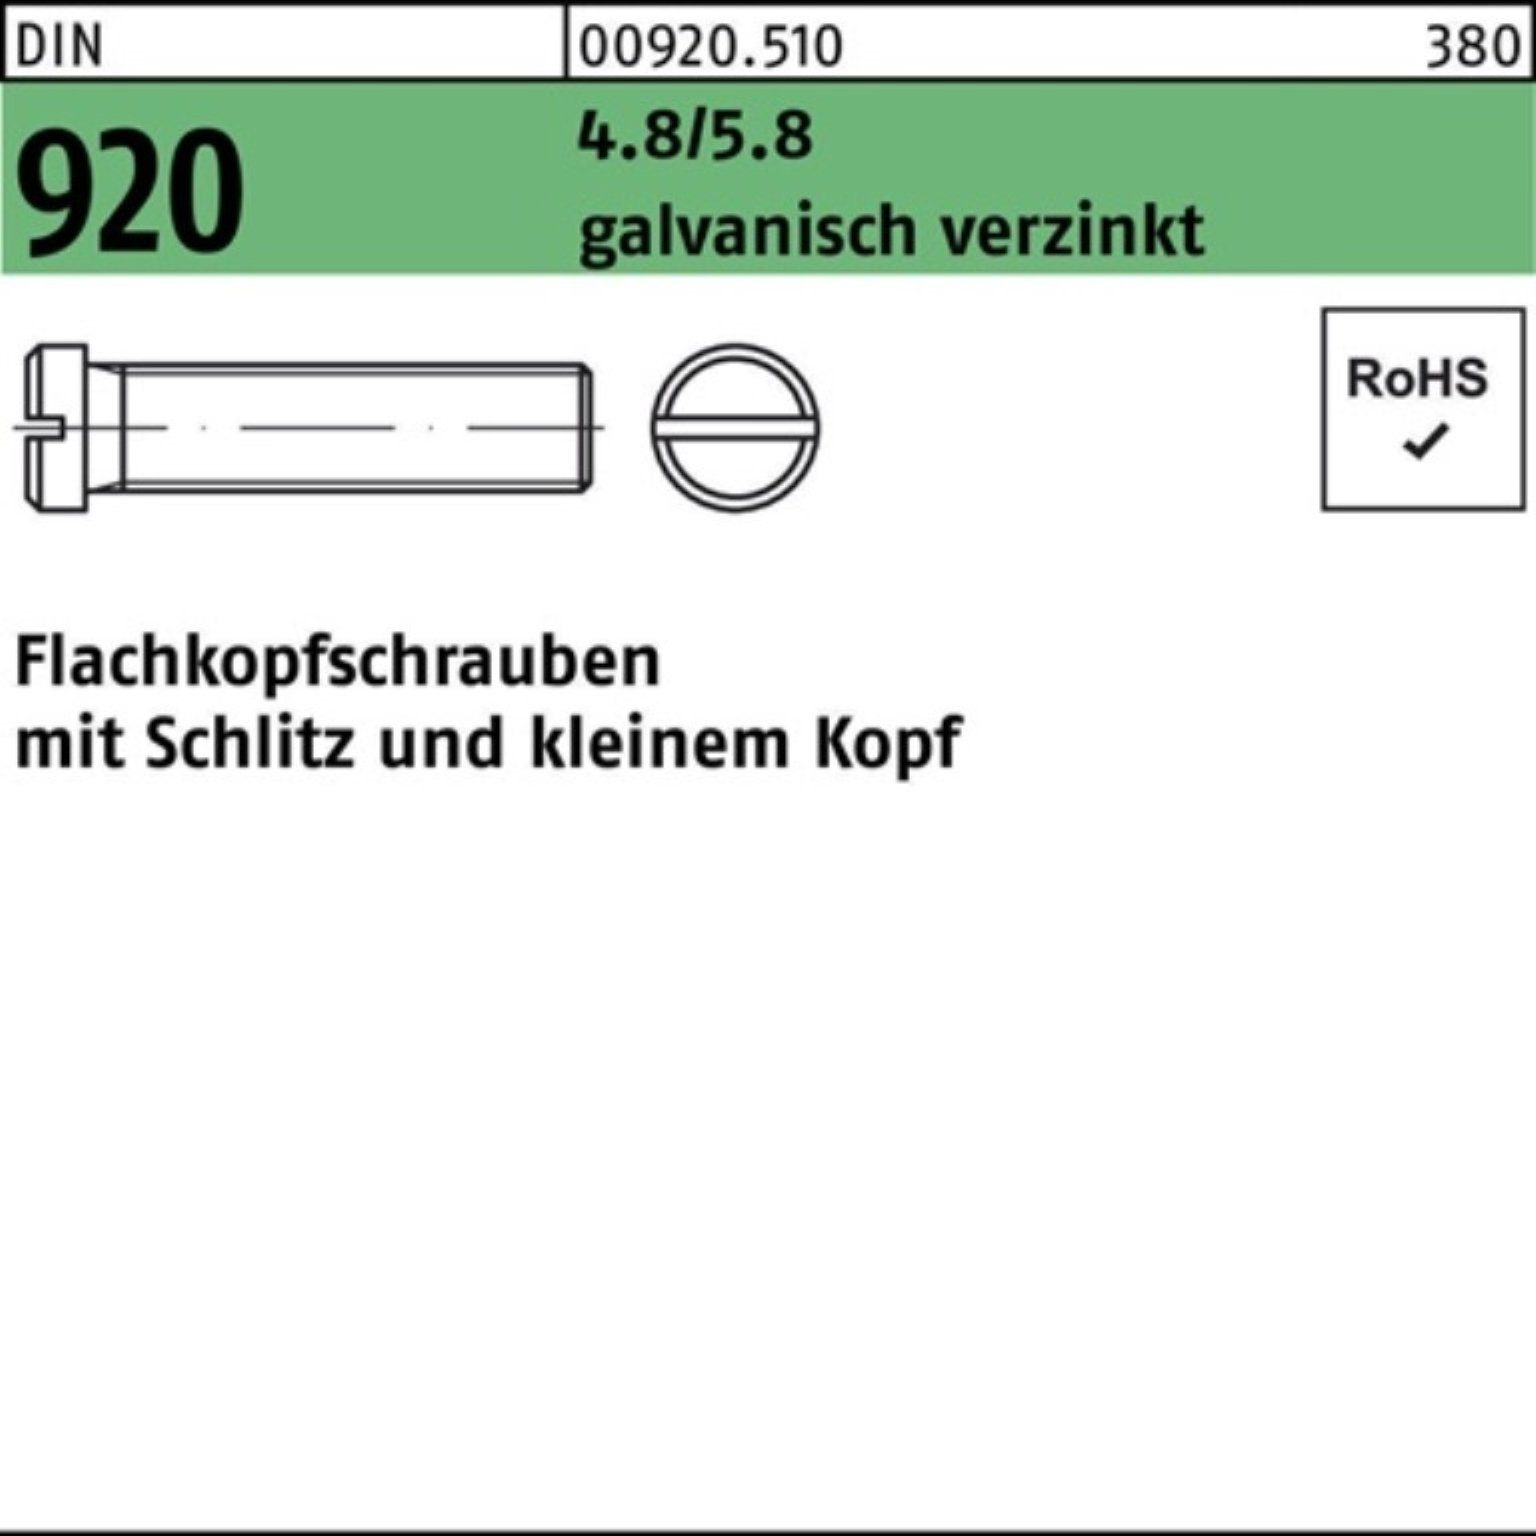 Reyher Schraube 100er Pack Flachkopfschraube DIN 920 Schlitz M3x 10 4.8/5.8 galv.verz.